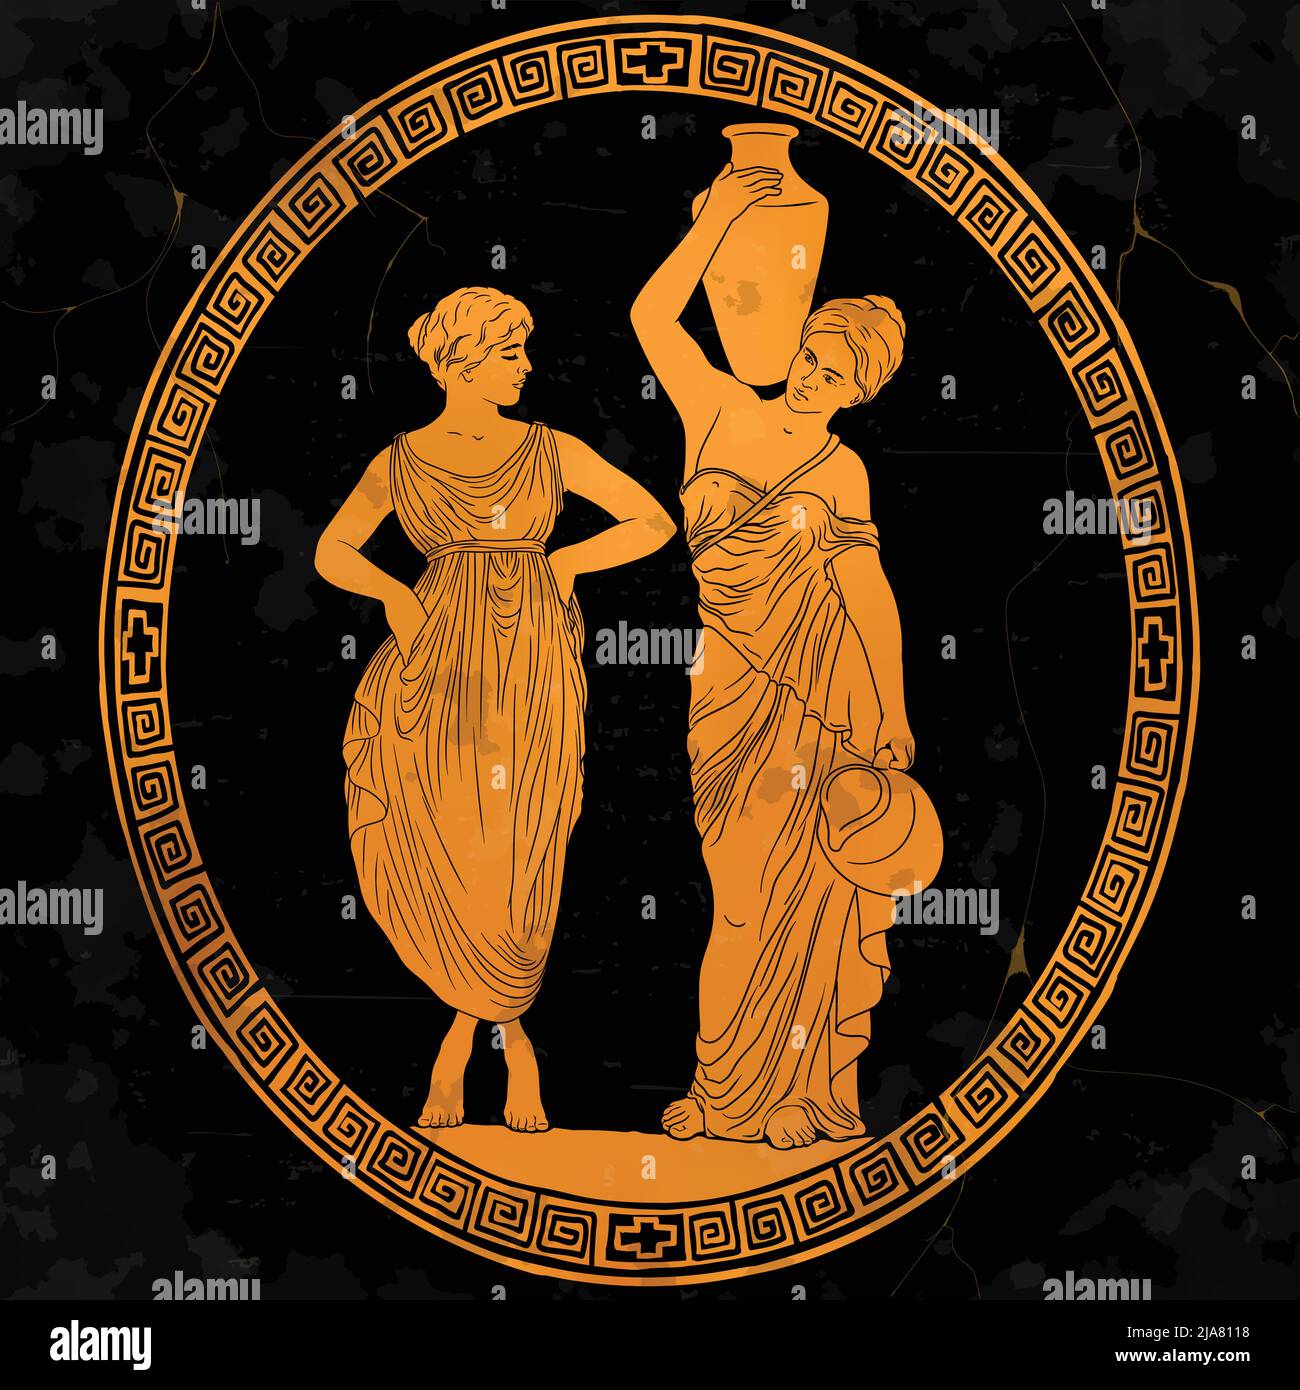 Zwei alte griechische junge schöne Frauen tragen Wasser in Krügen und führen einen Dialog. Zeichnung auf antiken Gerichten. Stock Vektor